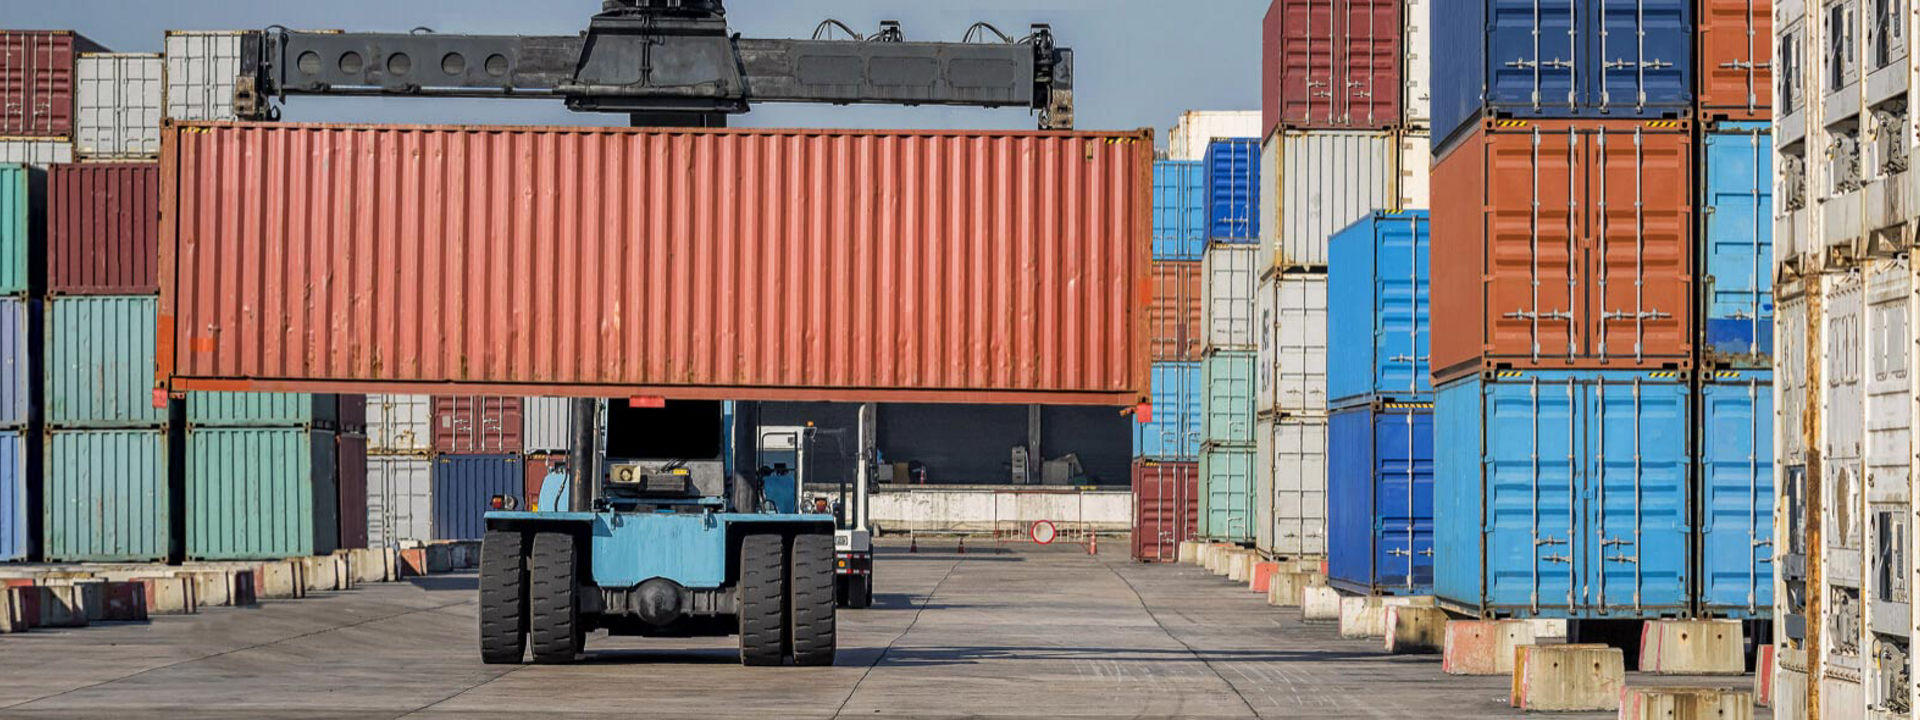 Una carretilla elevadora equipada con neumáticos todoterreno Bridgestone mueve contenedores de transporte en un gran puerto industrial